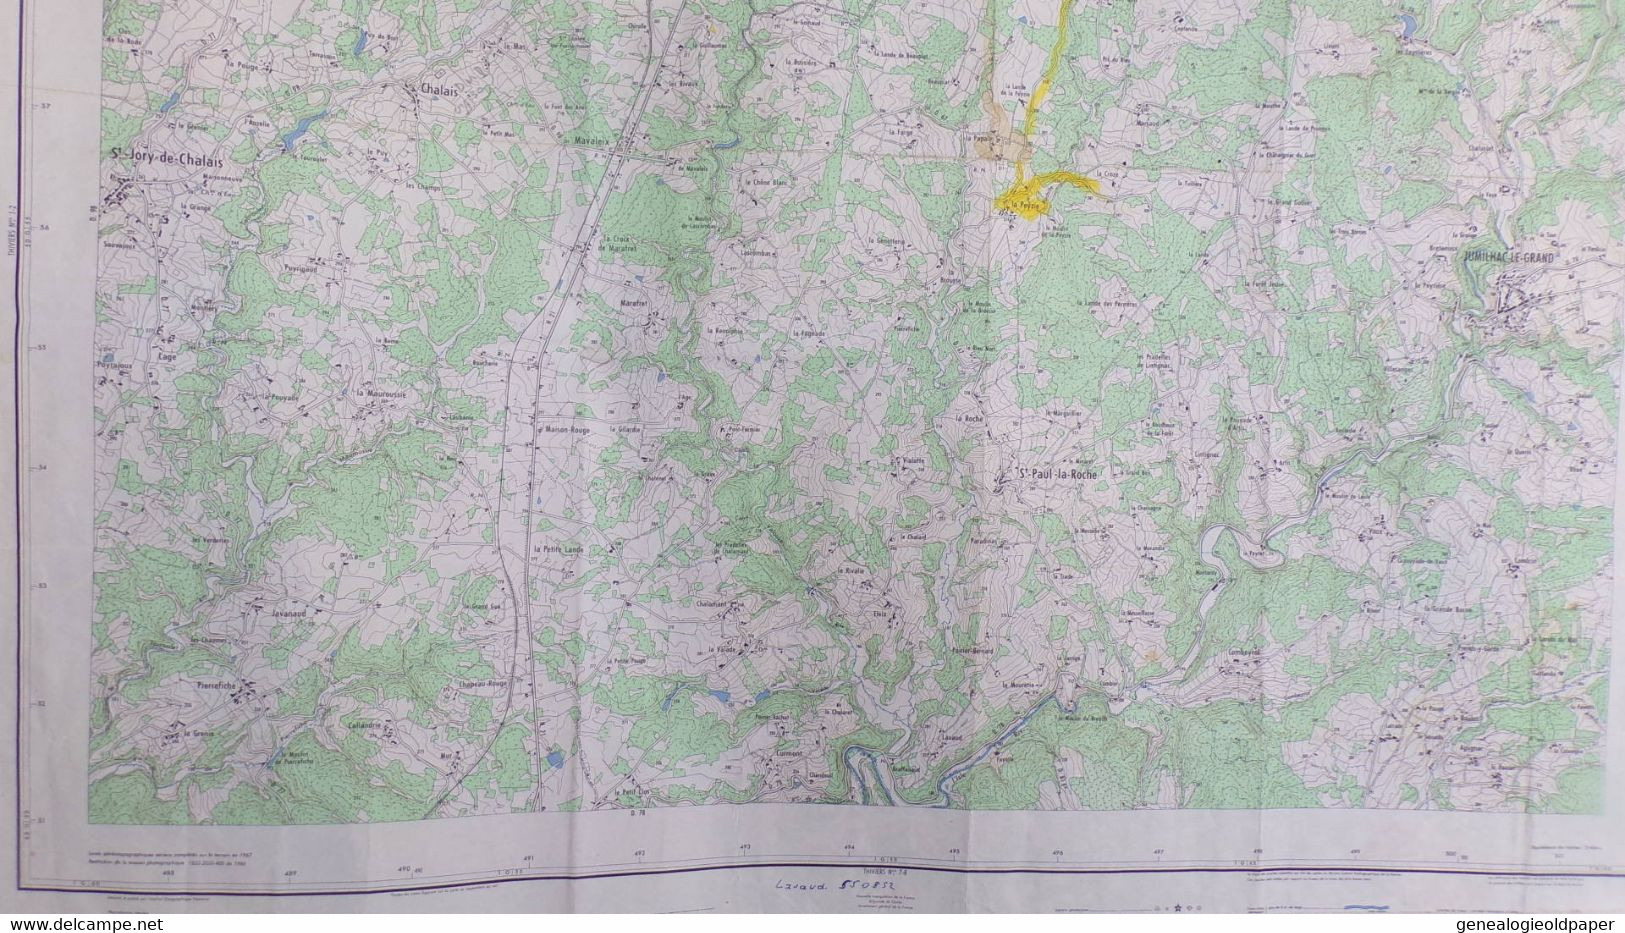 24-THIVIERS-CARTE GEOGRAPHIQUE 1967-JUMILHAC LE GRAND-CHALAIS-LA PAYZIE-ST SAINT PAUL LA ROCHE-ST JORY-PUYROUX-CURMONT - Topographical Maps